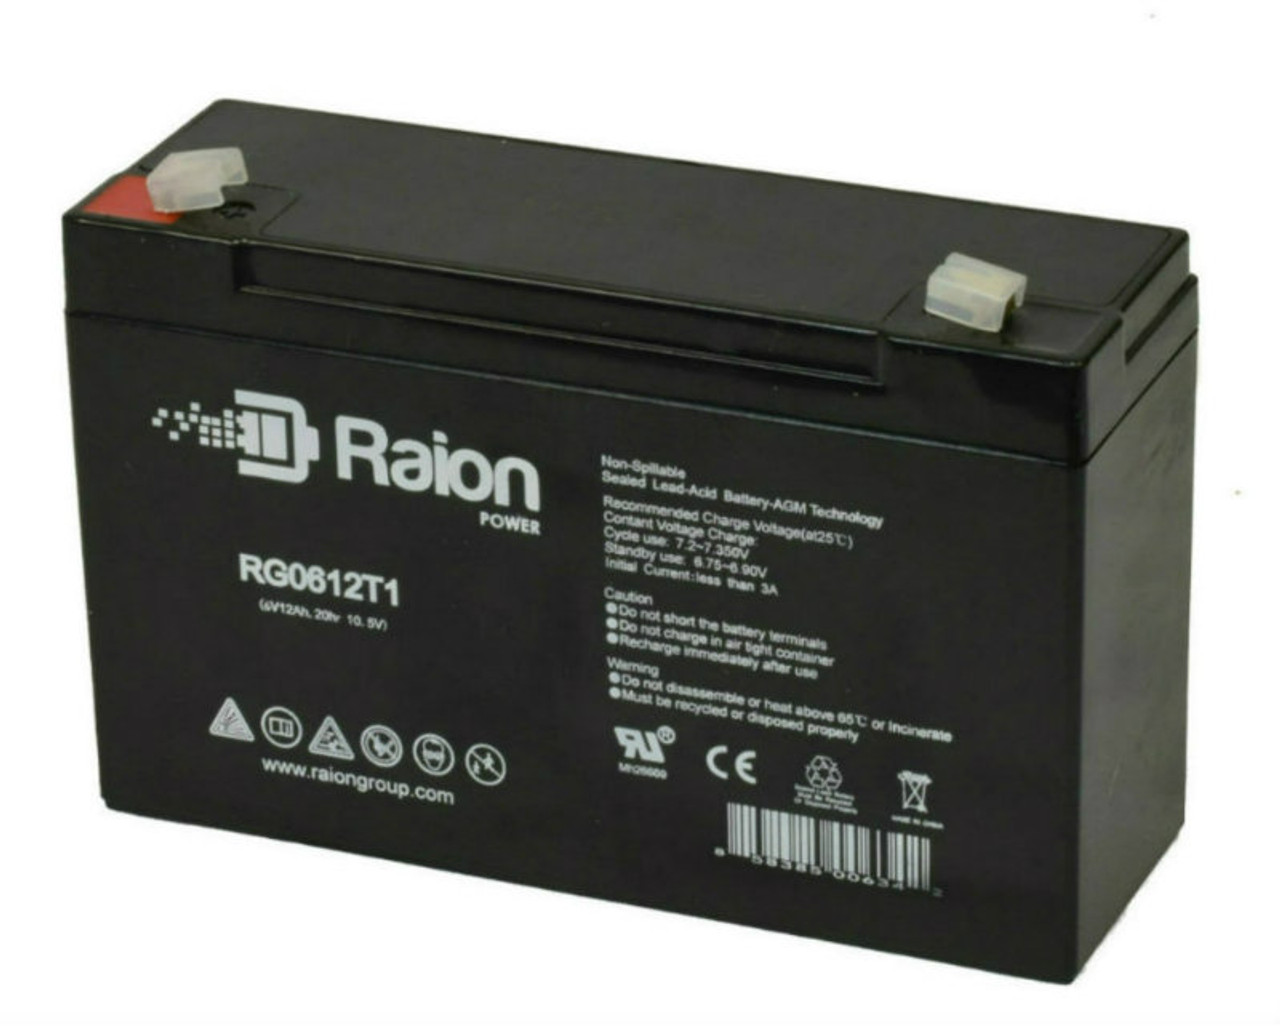 Raion Power RG06120T1 Replacement Emergency Light Battery for Sure-Lites UN1SRW